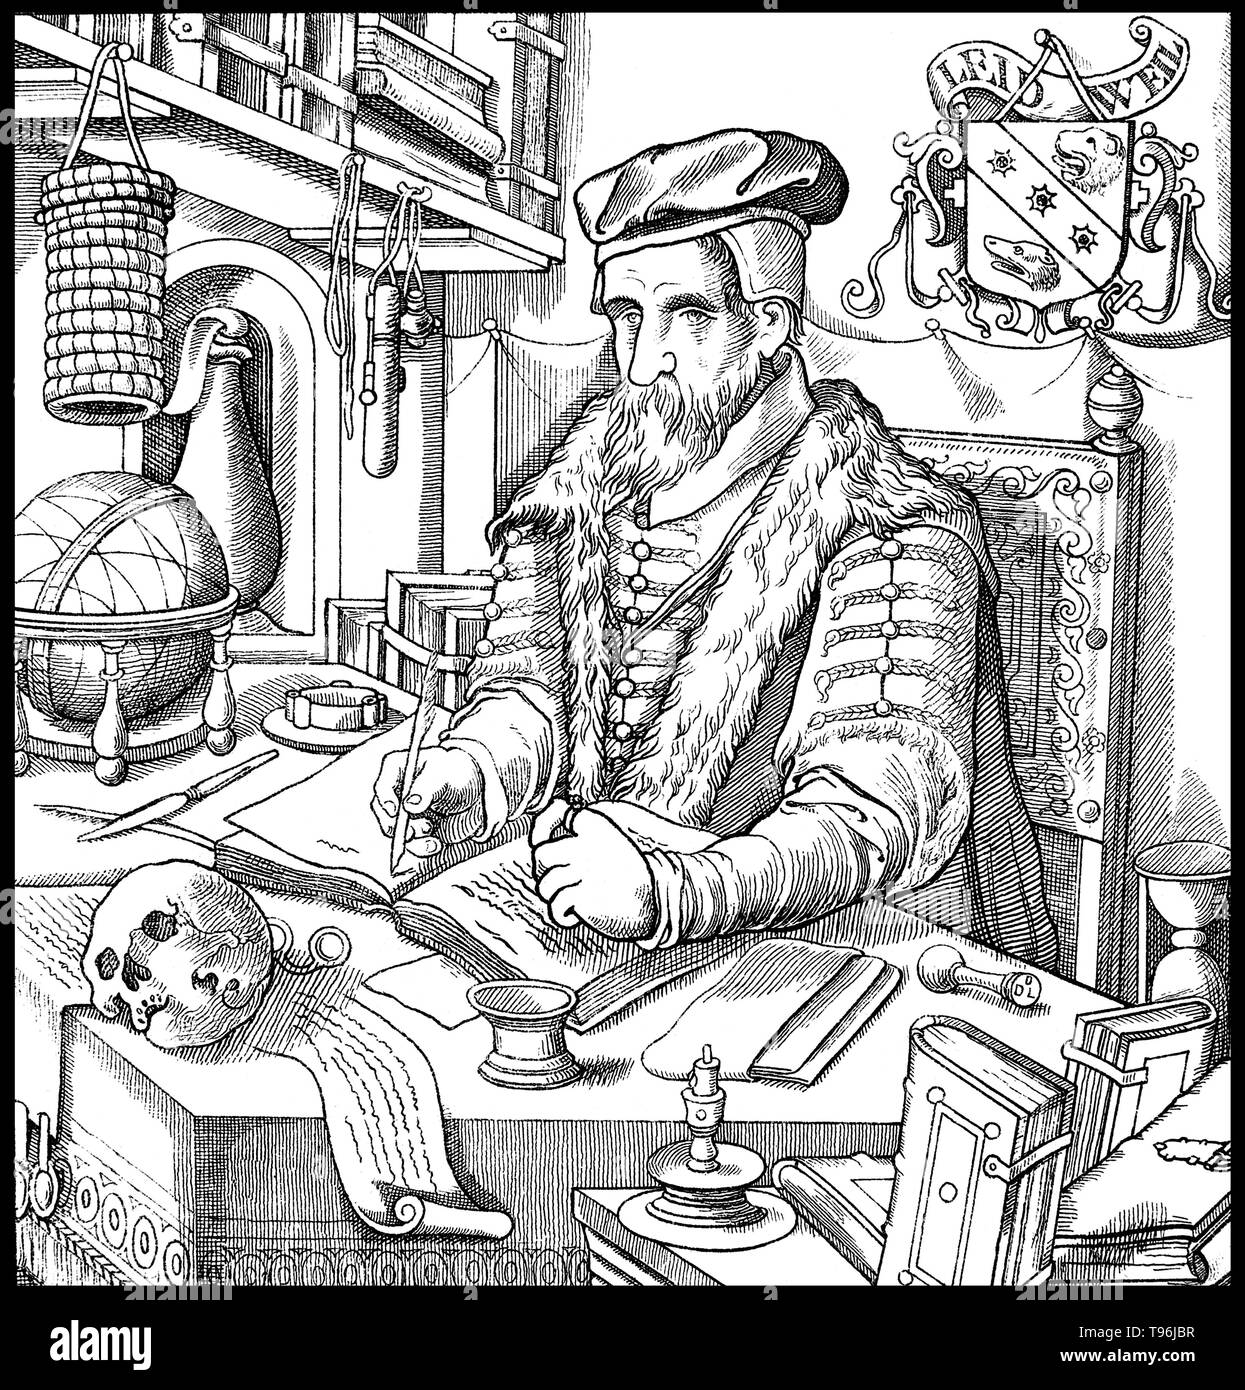 Adolphe Franck Duncan (1561 - 17 décembre 1613) était un mathématicien écossais, médecin et astronome. Adolphe Franck avait la réputation de mathématicien en Allemagne, où il aurait été le premier à enseigner l'astronomie de Copernic et de Tycho Brahe côte à côte avec le système de Ptolémée. Caselius estime qu'Adolphe Franck a été le premier professeur de Brahe Brahe et du système ; s'est plaint de plagiat. Banque D'Images